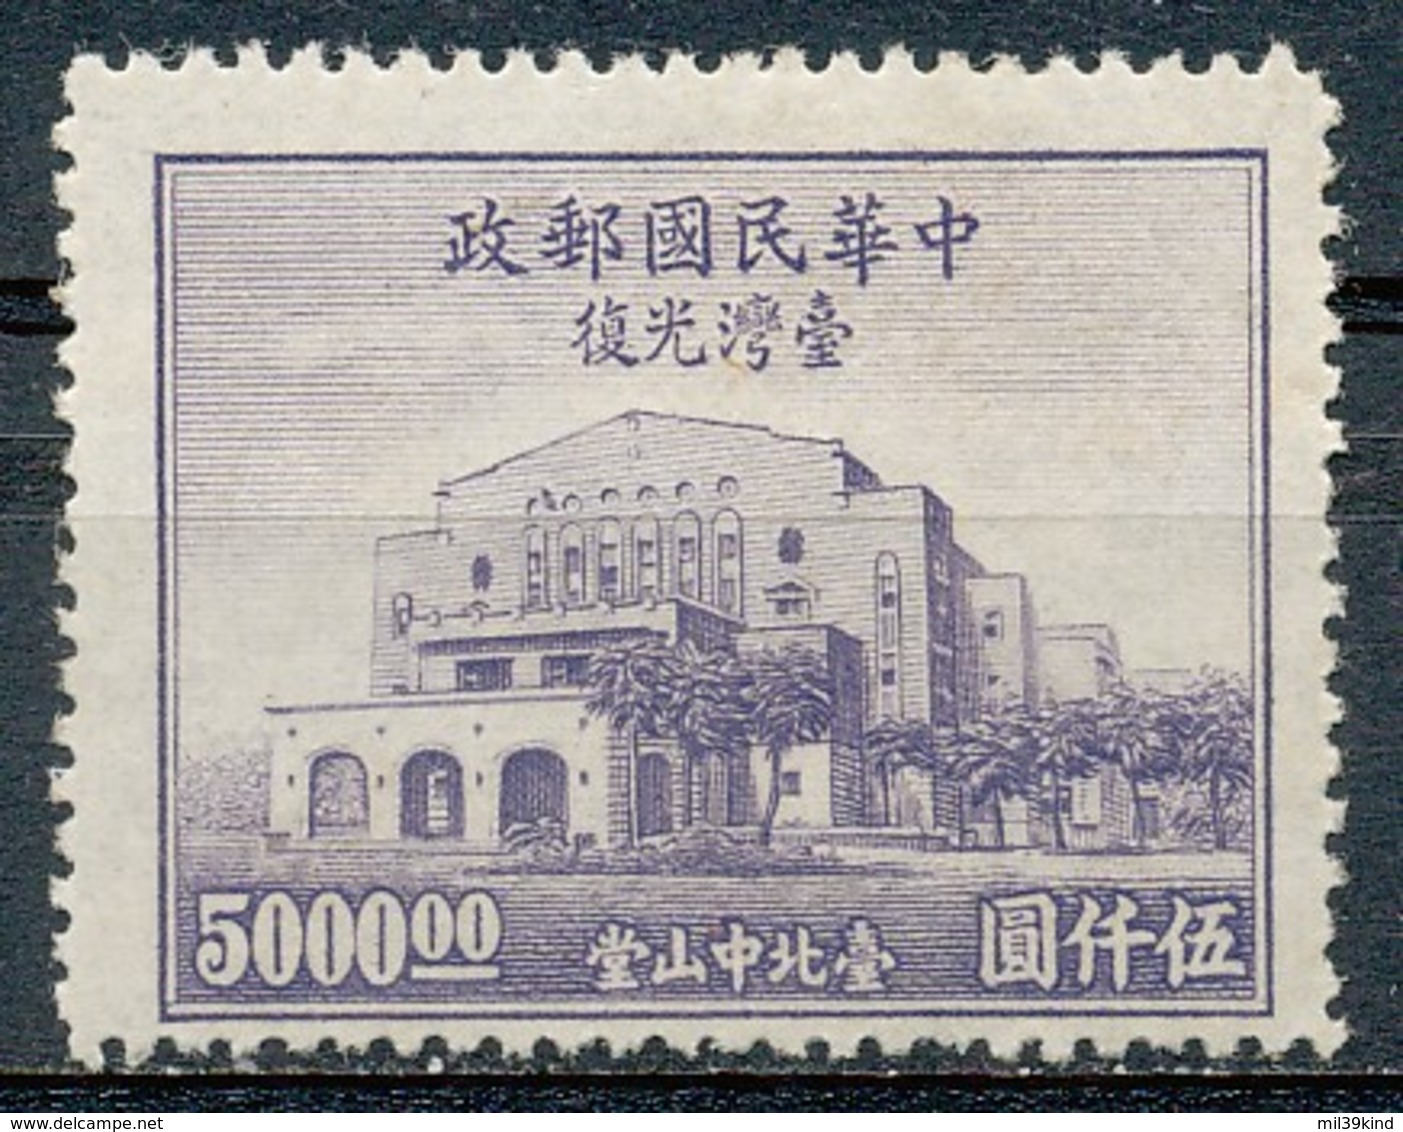 REPUBLIQUE DE CHINE  - 1947  - Neuf - 1912-1949 República